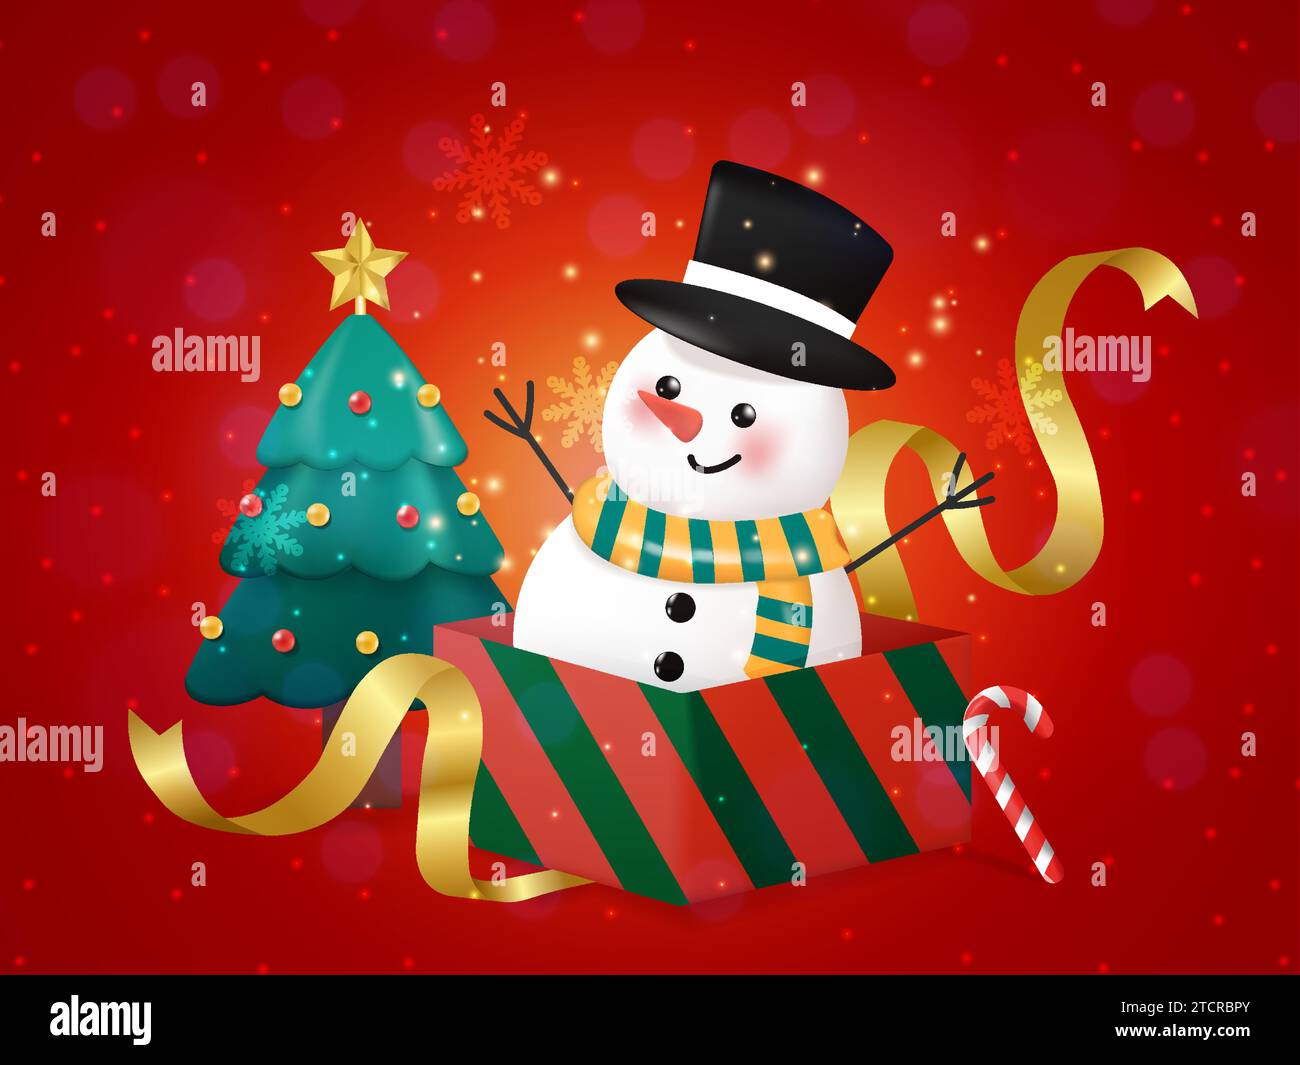 Buon Natale e felice compagno di Natale. Pupazzo di neve, caramelle e albero di Natale nella scena natalizia su sfondo rosso. illustrazione vettoriale. Illustrazione Vettoriale